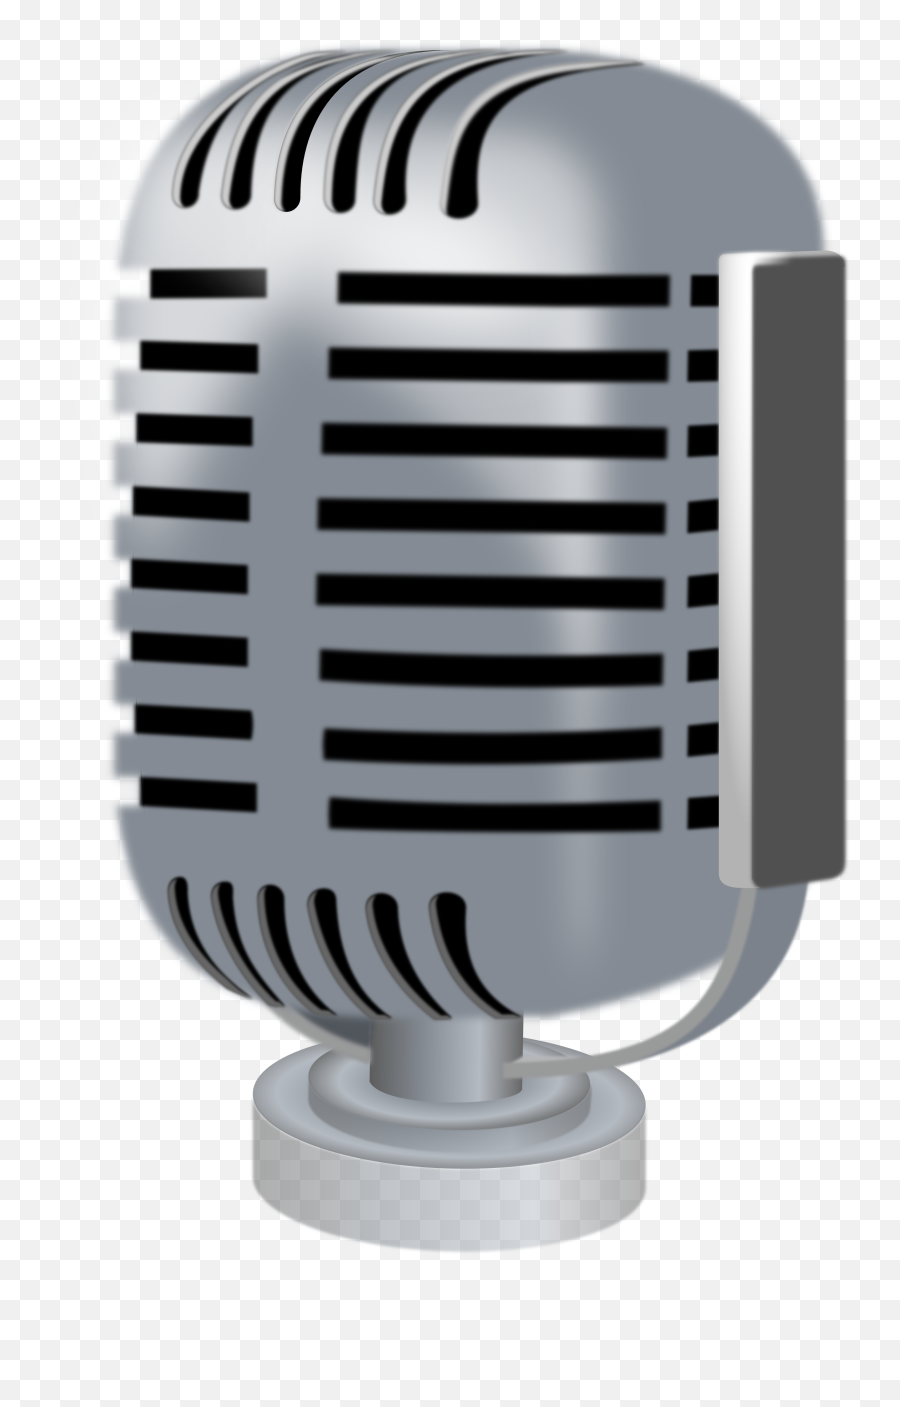 Microphone Clipart - Microphone Clip Art Public Domain Emoji,Microphone Clipart